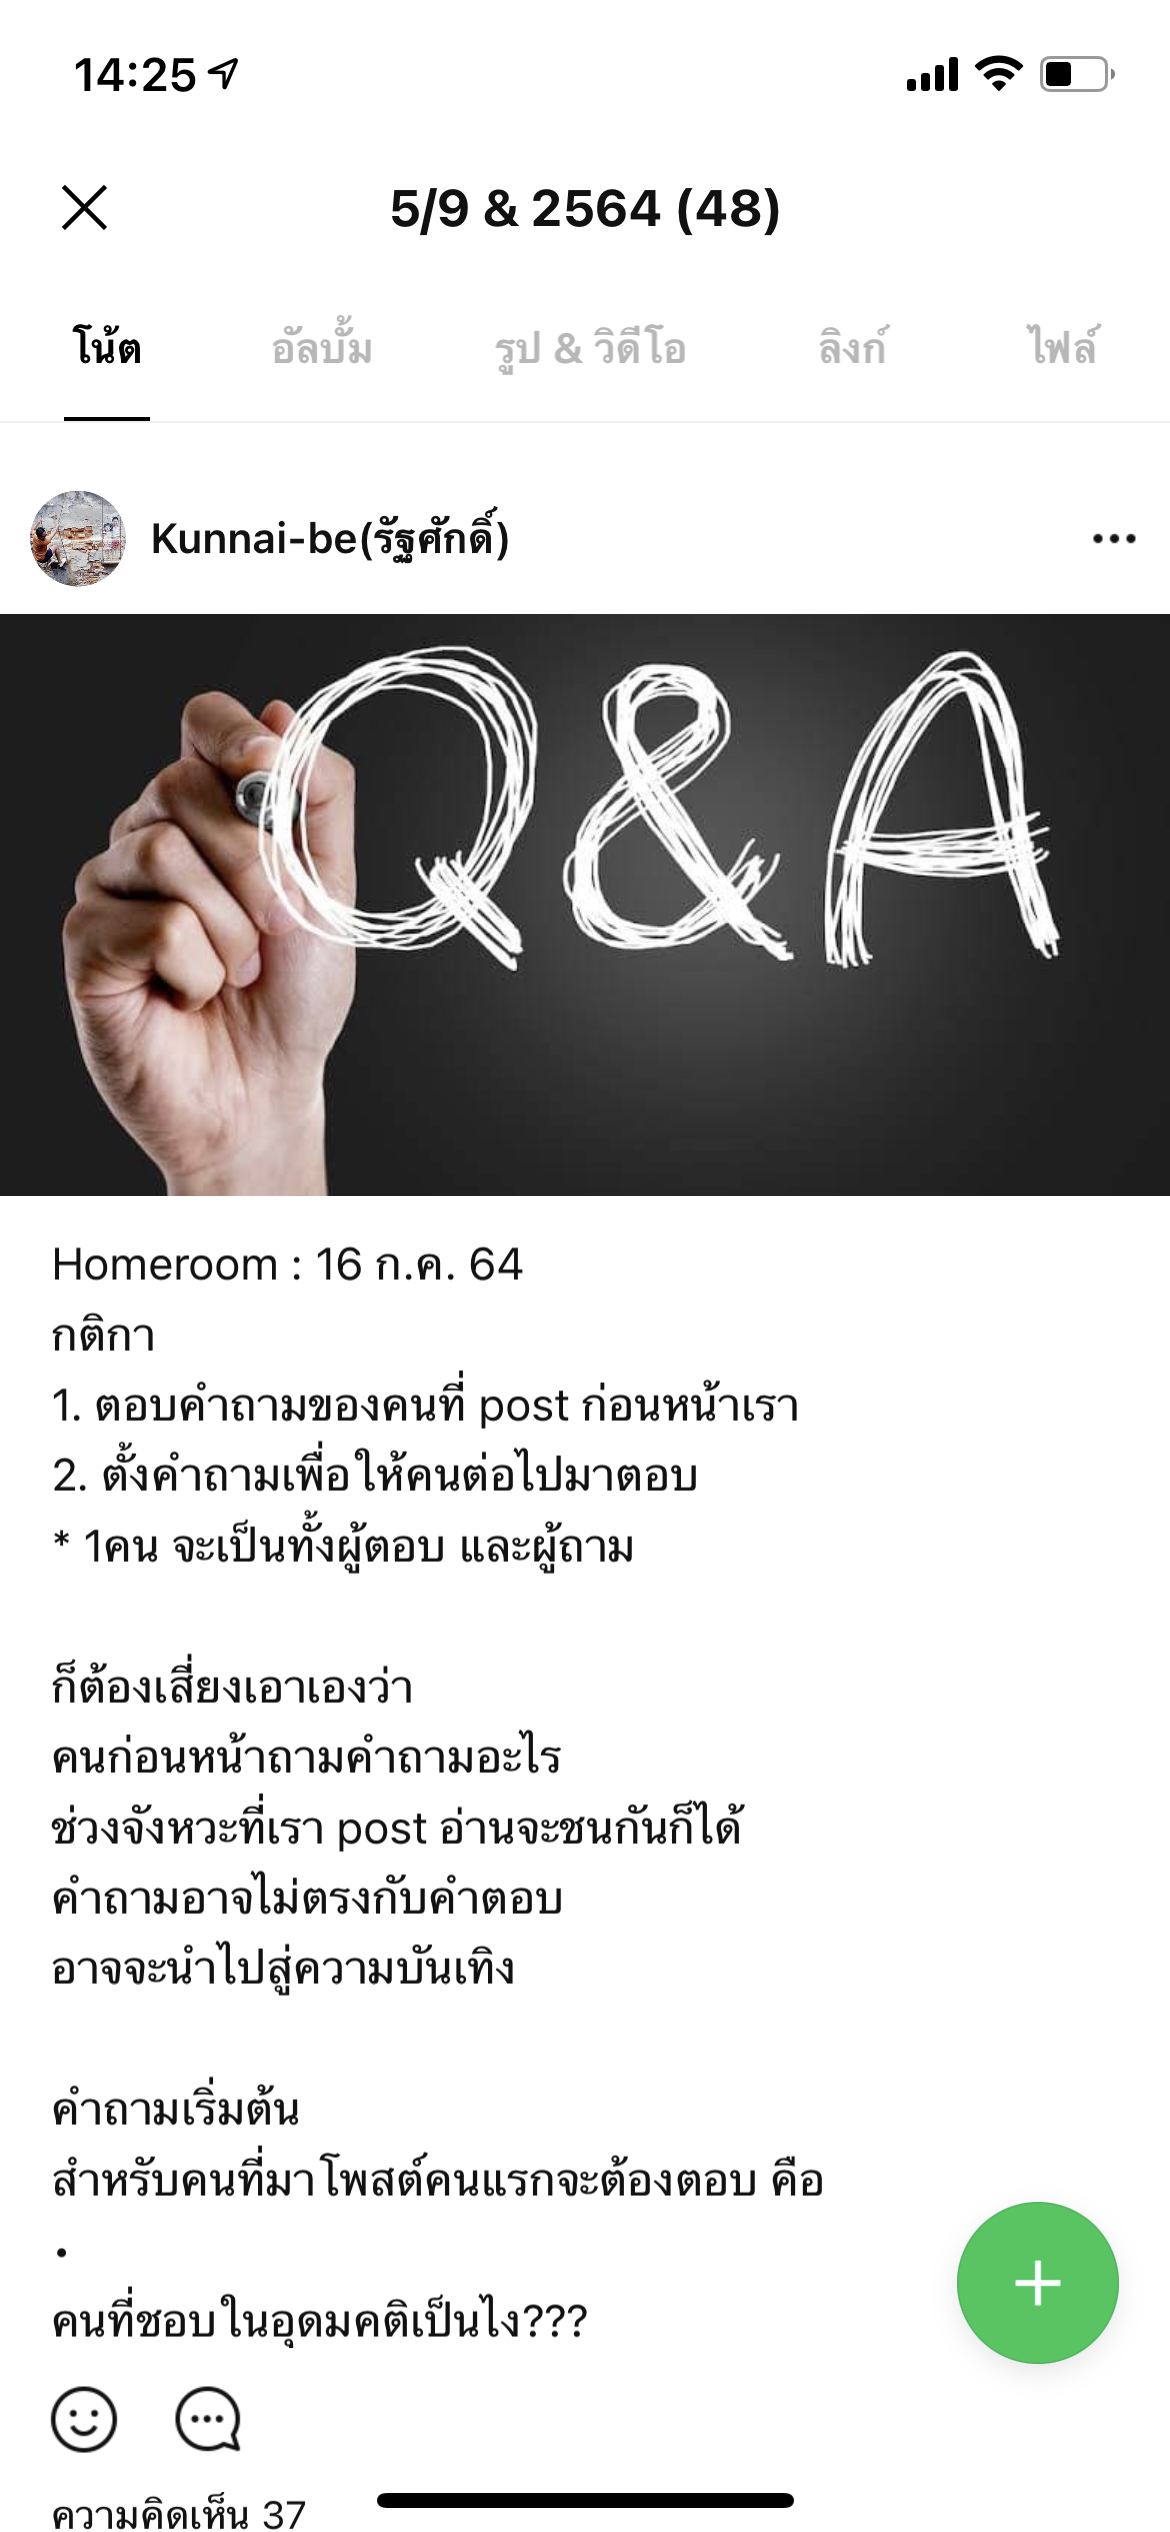 ภาพประกอบไอเดีย Homeroom : Q&A ถามเถอะ อยากตอบ